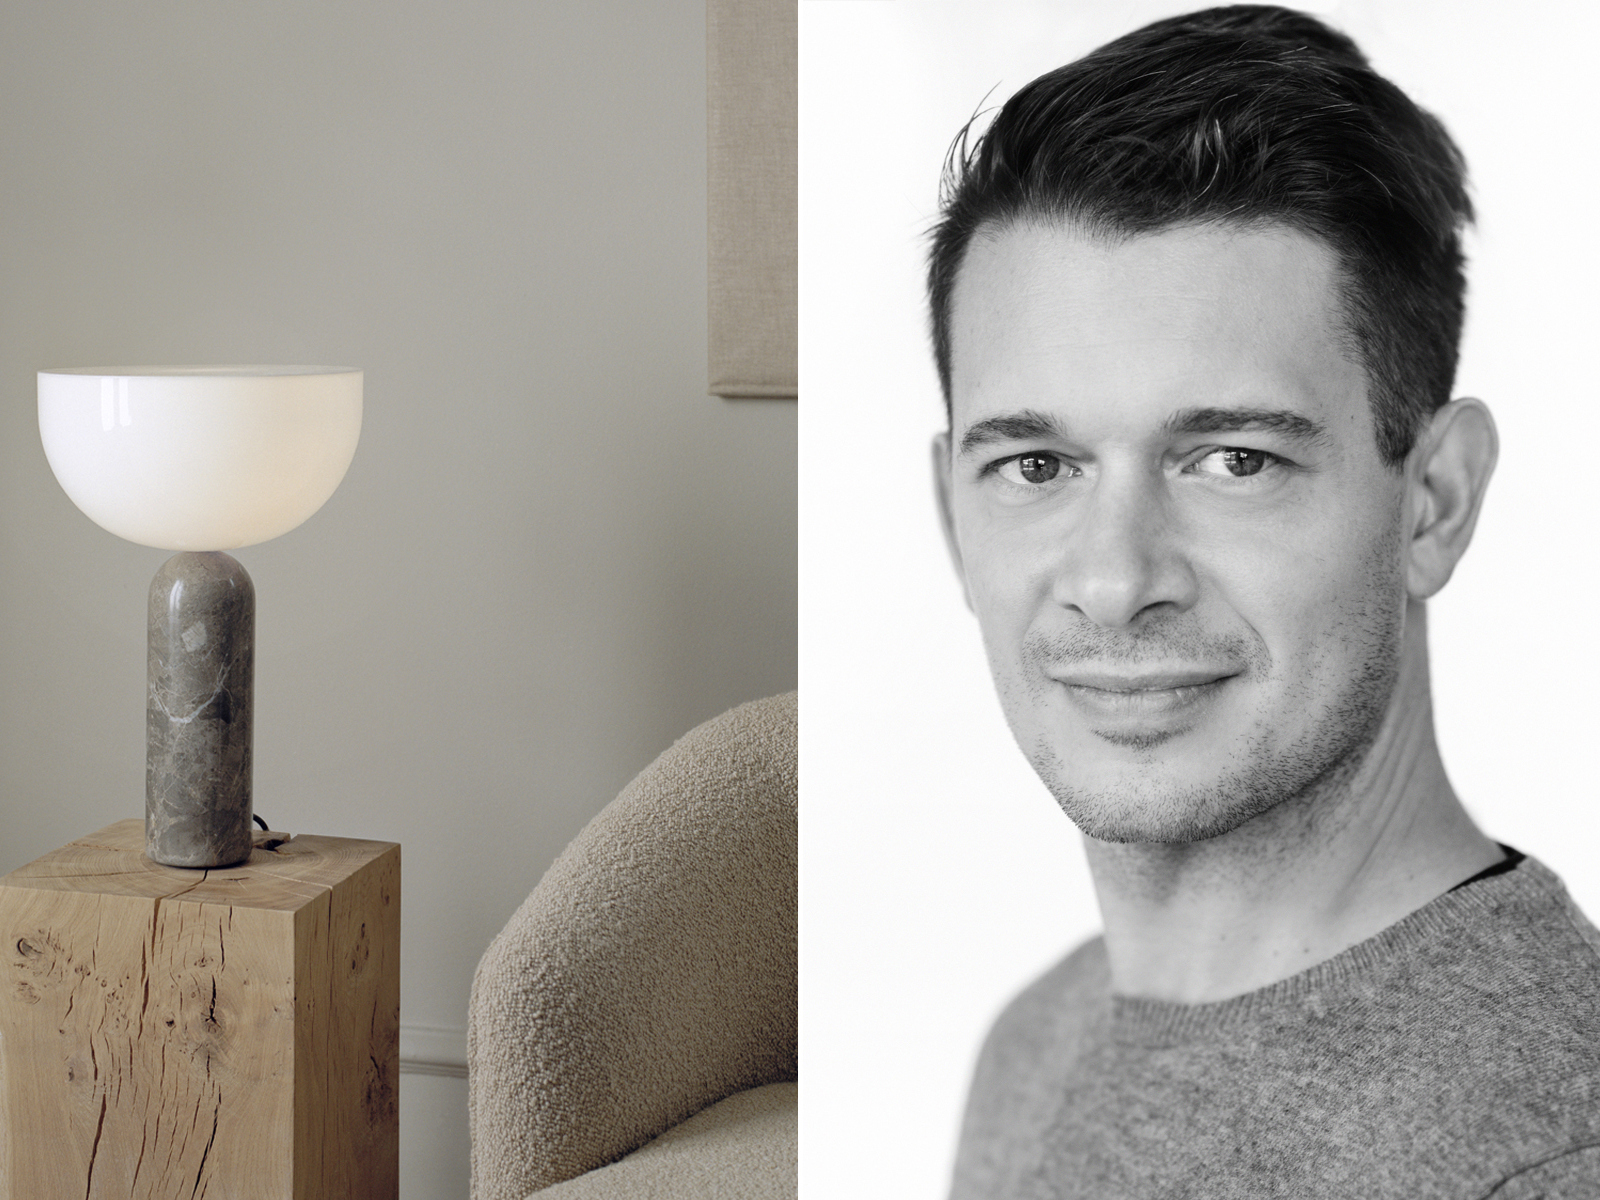 Lampe på et trebord og portrett av Lars Tornøe i svart hvitt. 2 foto satt sammen.